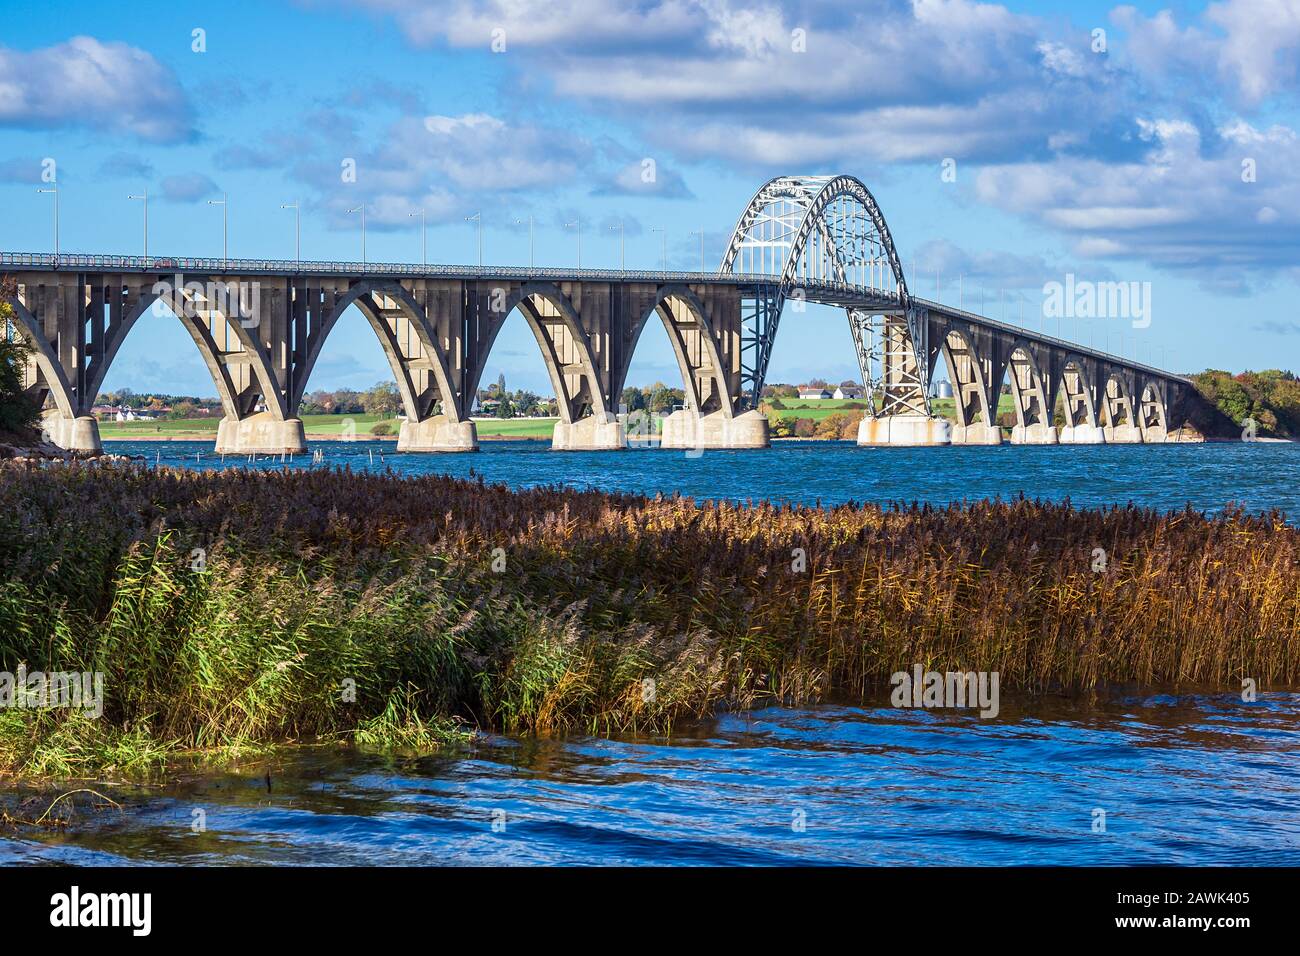 A bridge between Seeland und Moen in Denmark. Stock Photo